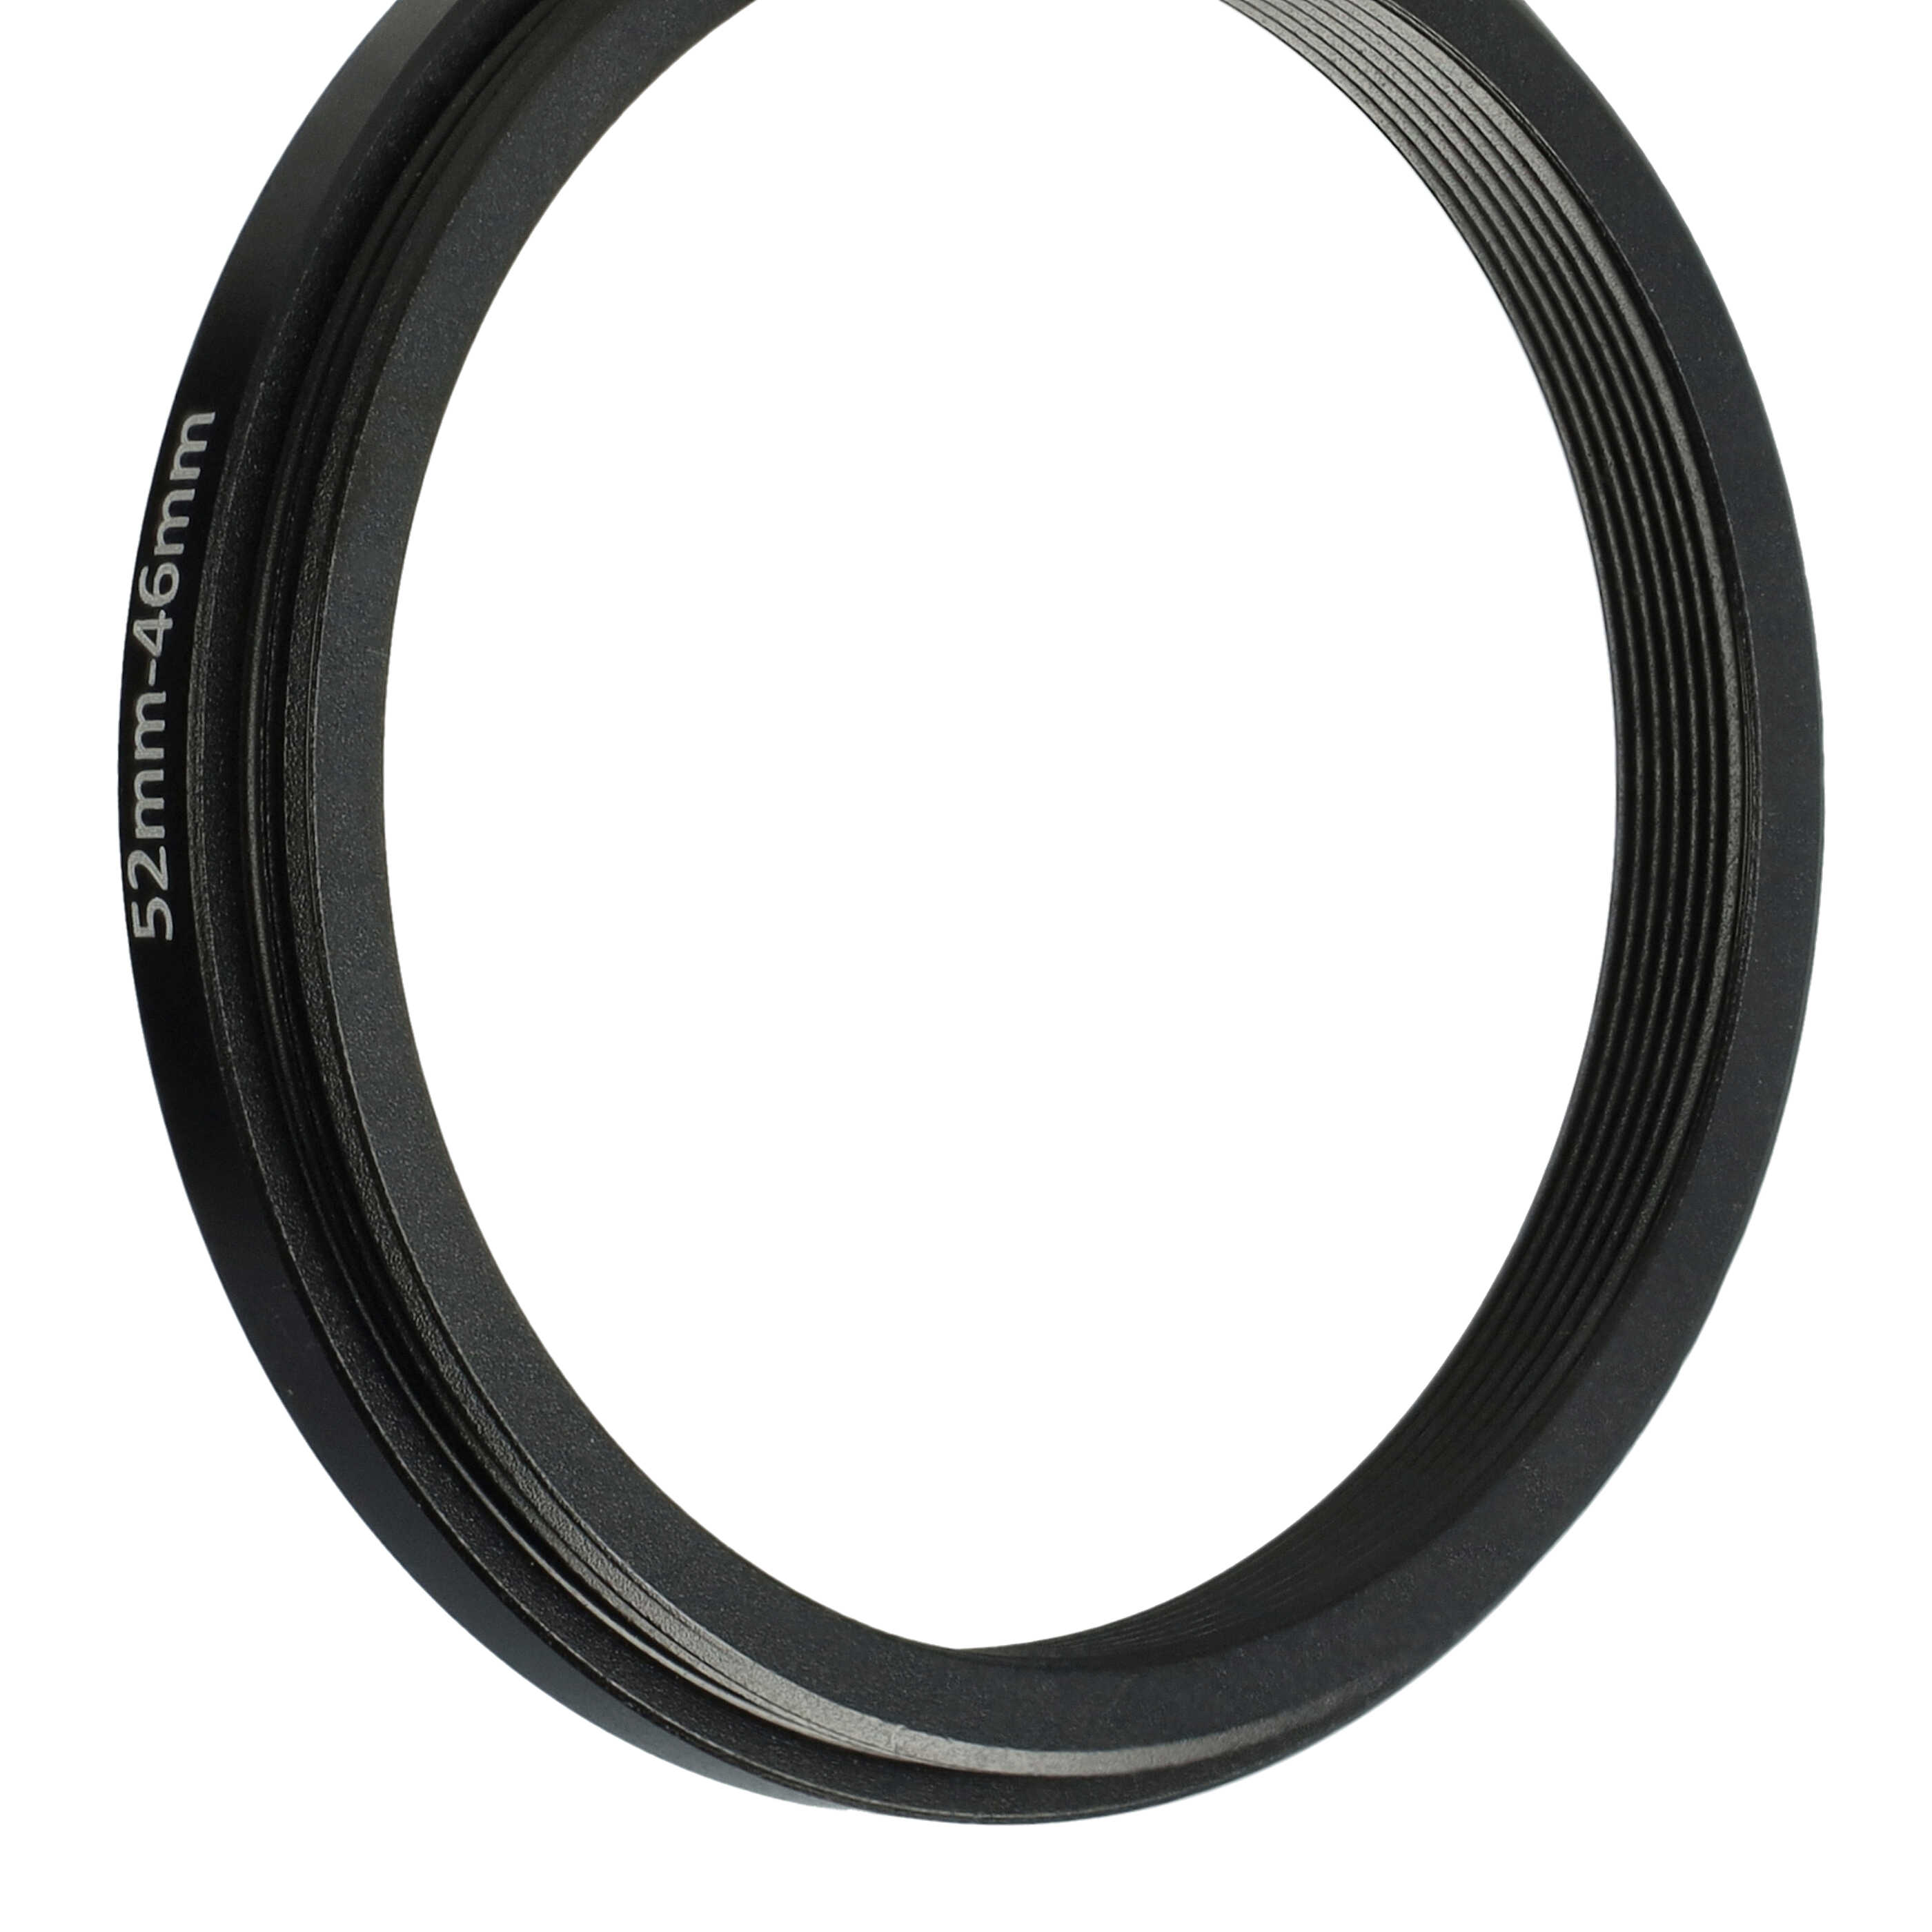 Anello adattatore step-down da 52 mm a 46 mm per obiettivo fotocamera - Adattatore filtro, metallo, nero